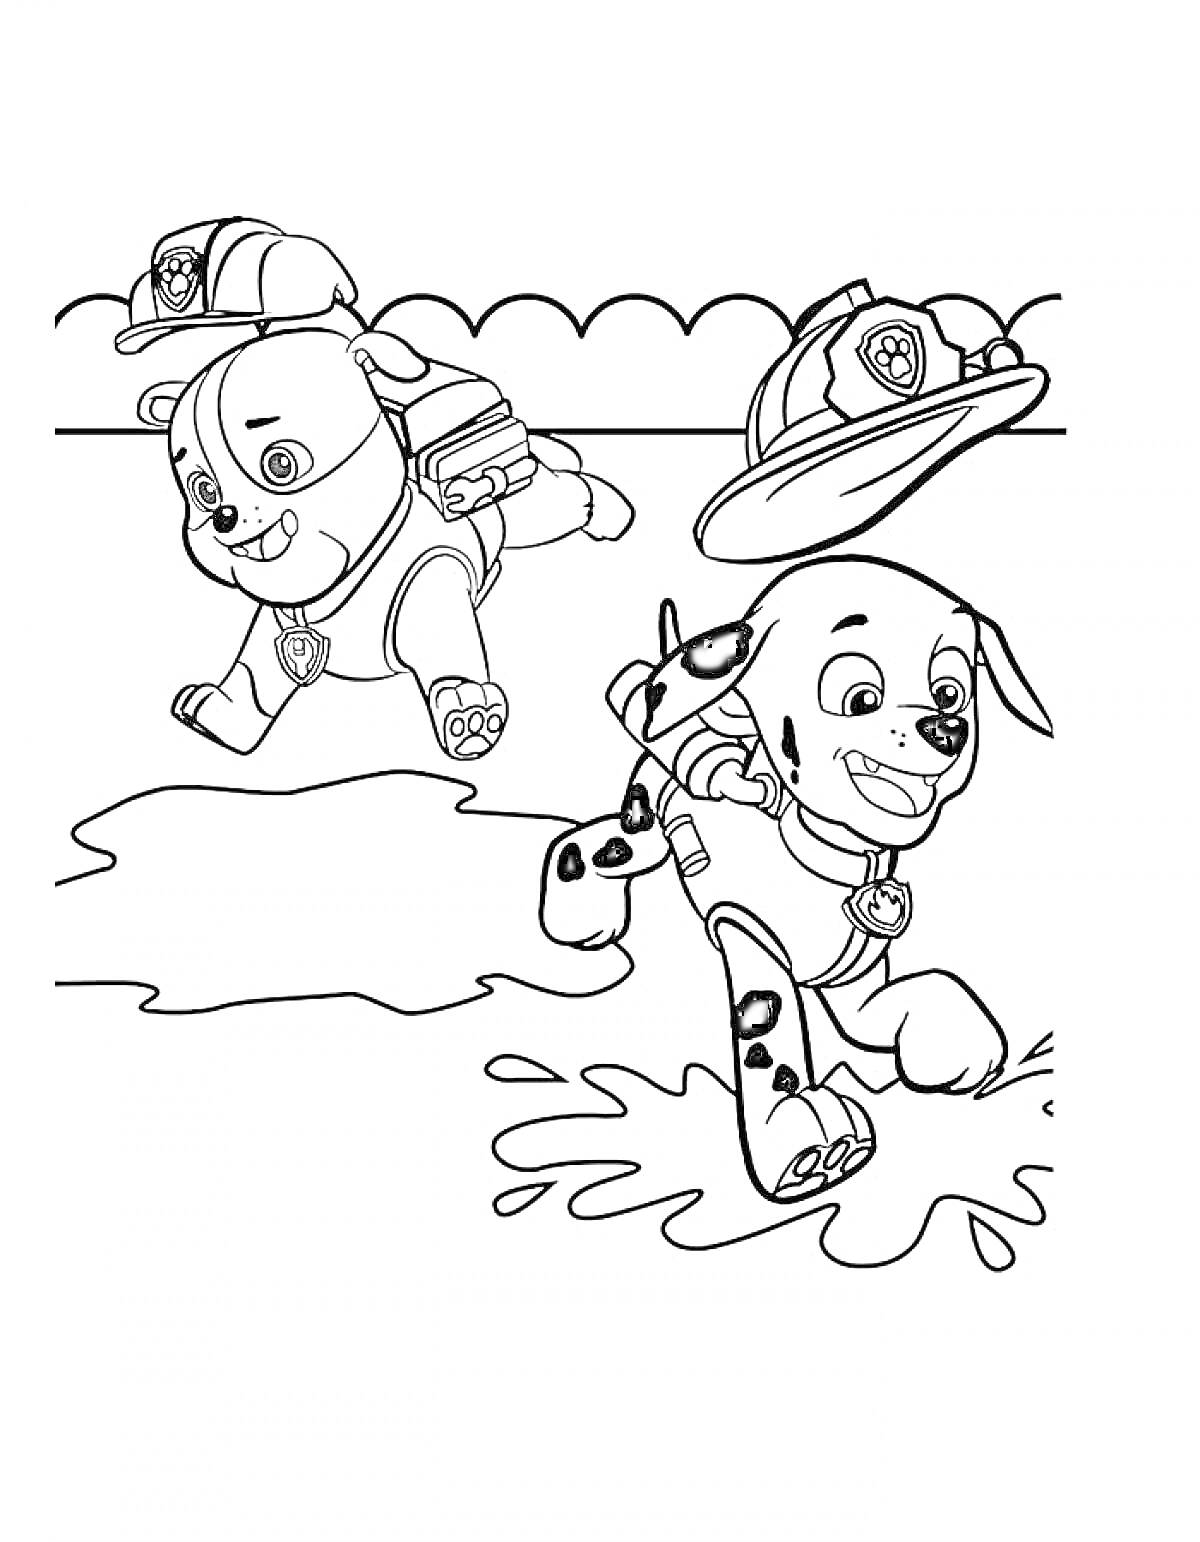 Раскраска Два щенка из Щенячьего Патруля бегут, кепка и каска летят